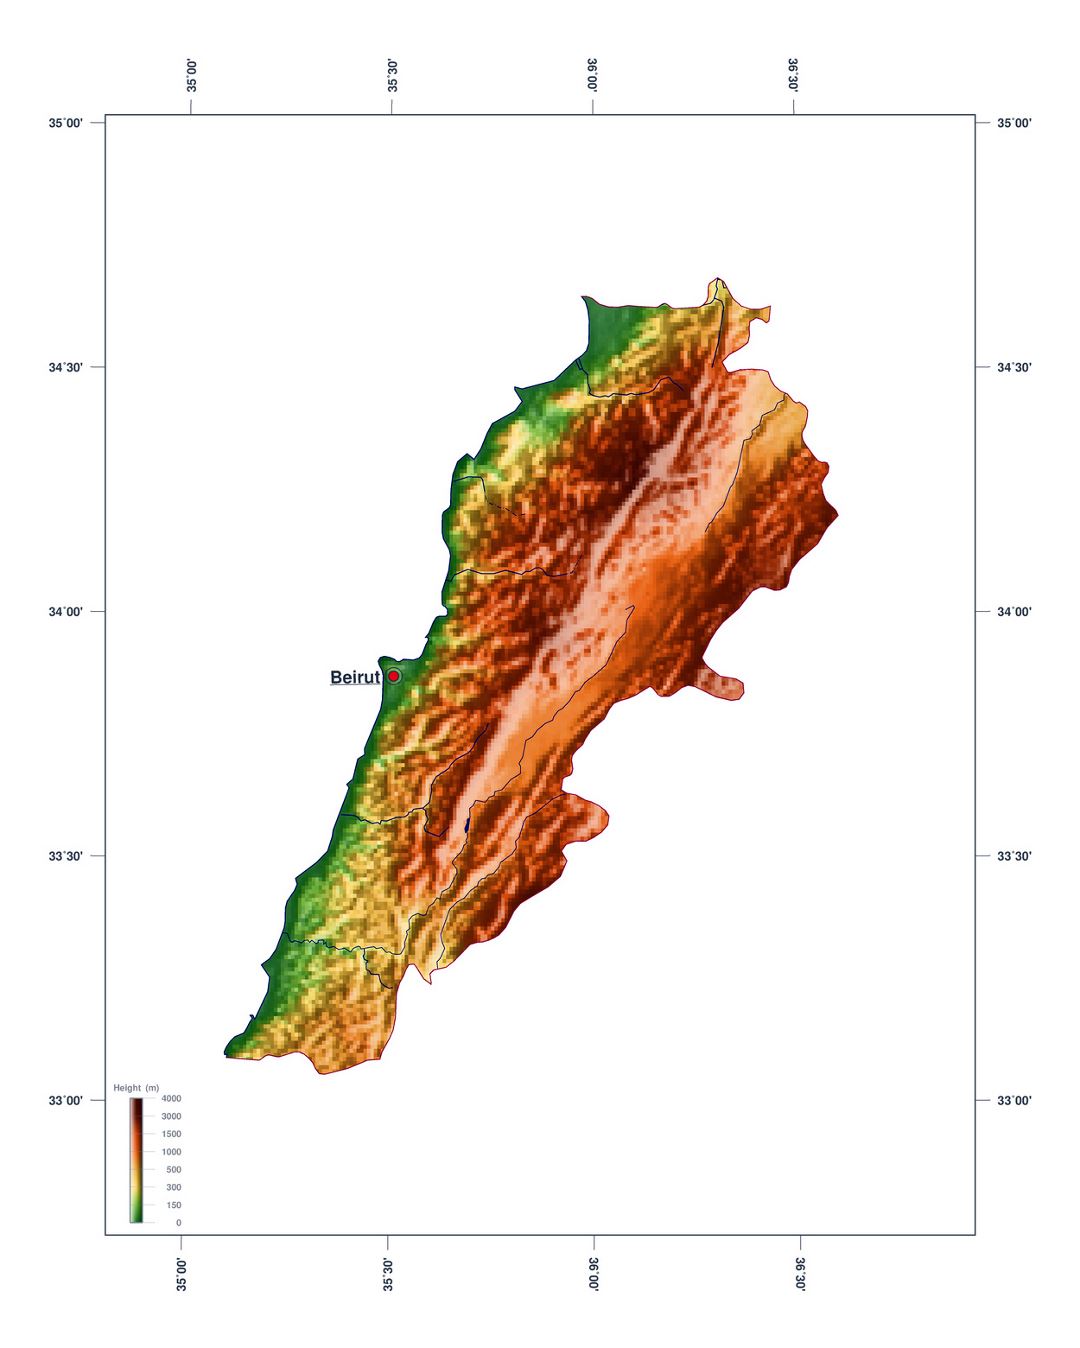 Large elevation map of Lebanon